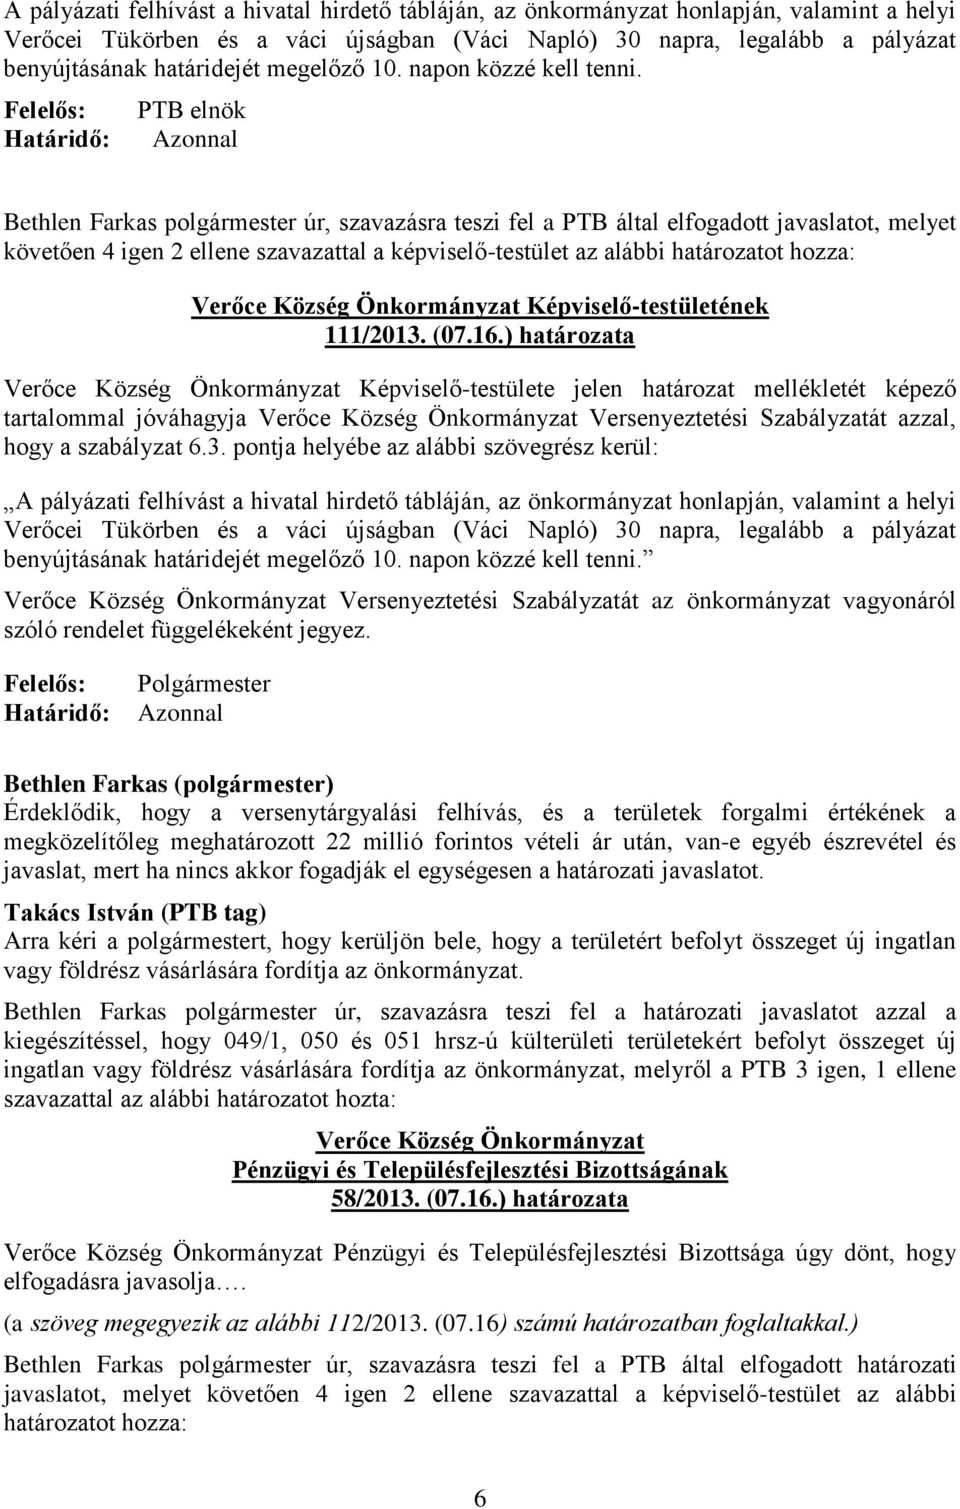 PTB elnök Bethlen Farkas polgármester úr, szavazásra teszi fel a PTB által elfogadott javaslatot, melyet követően 4 igen 2 ellene szavazattal a képviselő-testület az alábbi határozatot hozza: Verőce